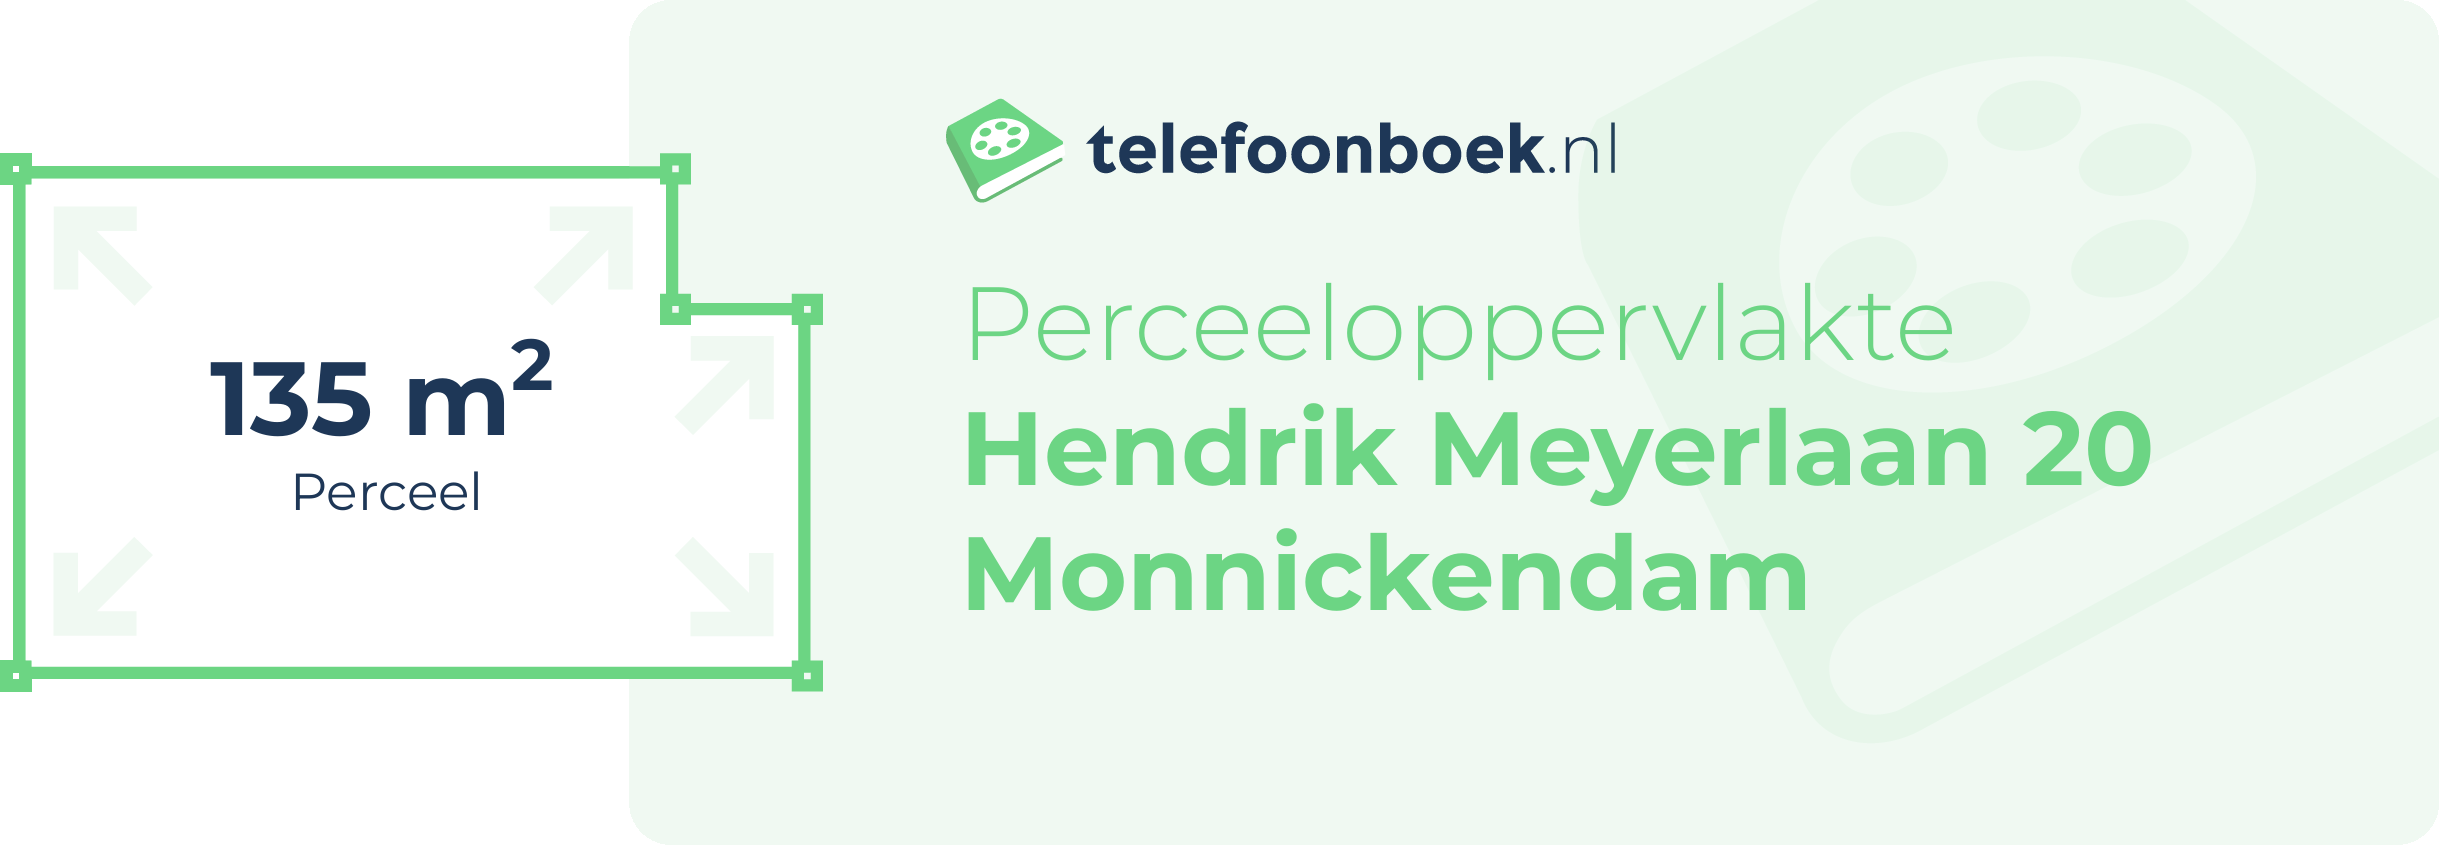 Perceeloppervlakte Hendrik Meyerlaan 20 Monnickendam